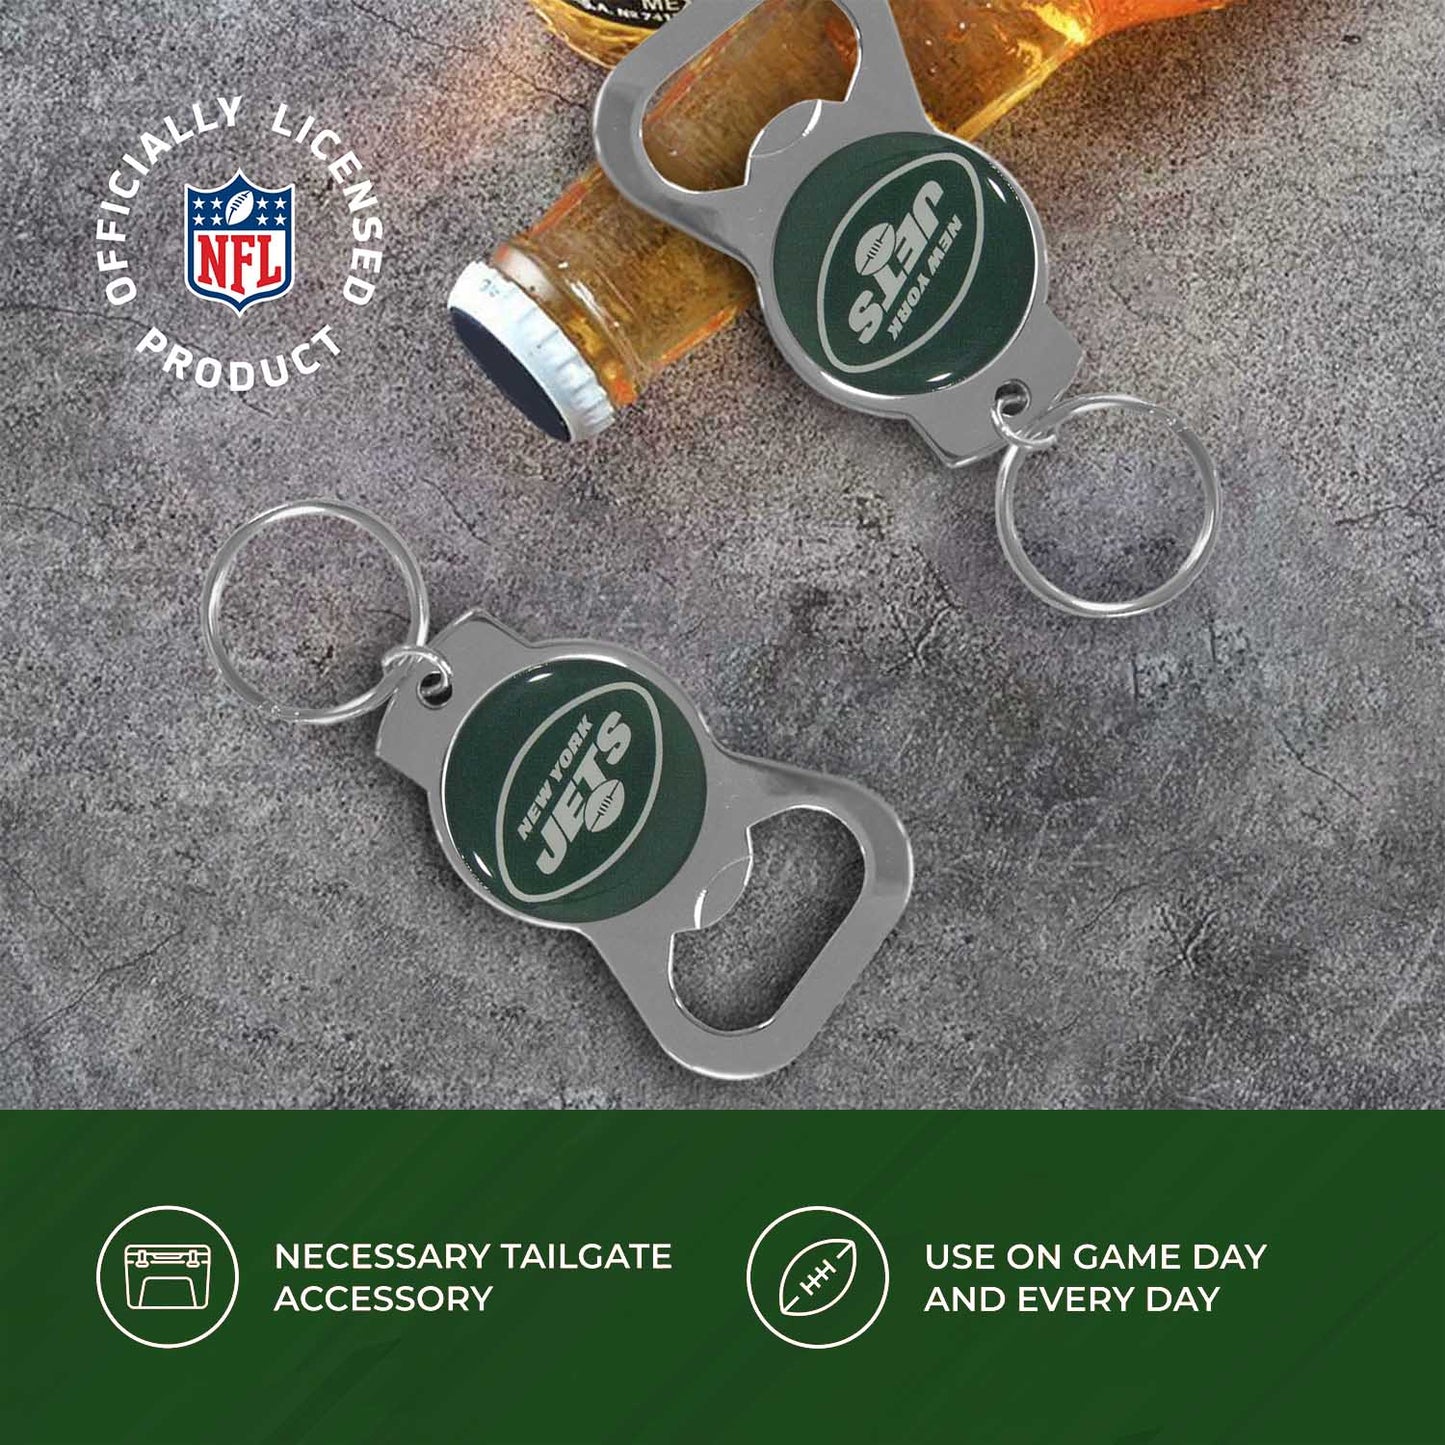 New York Jets NFL Bottle Opener Keychain Bundle - Black